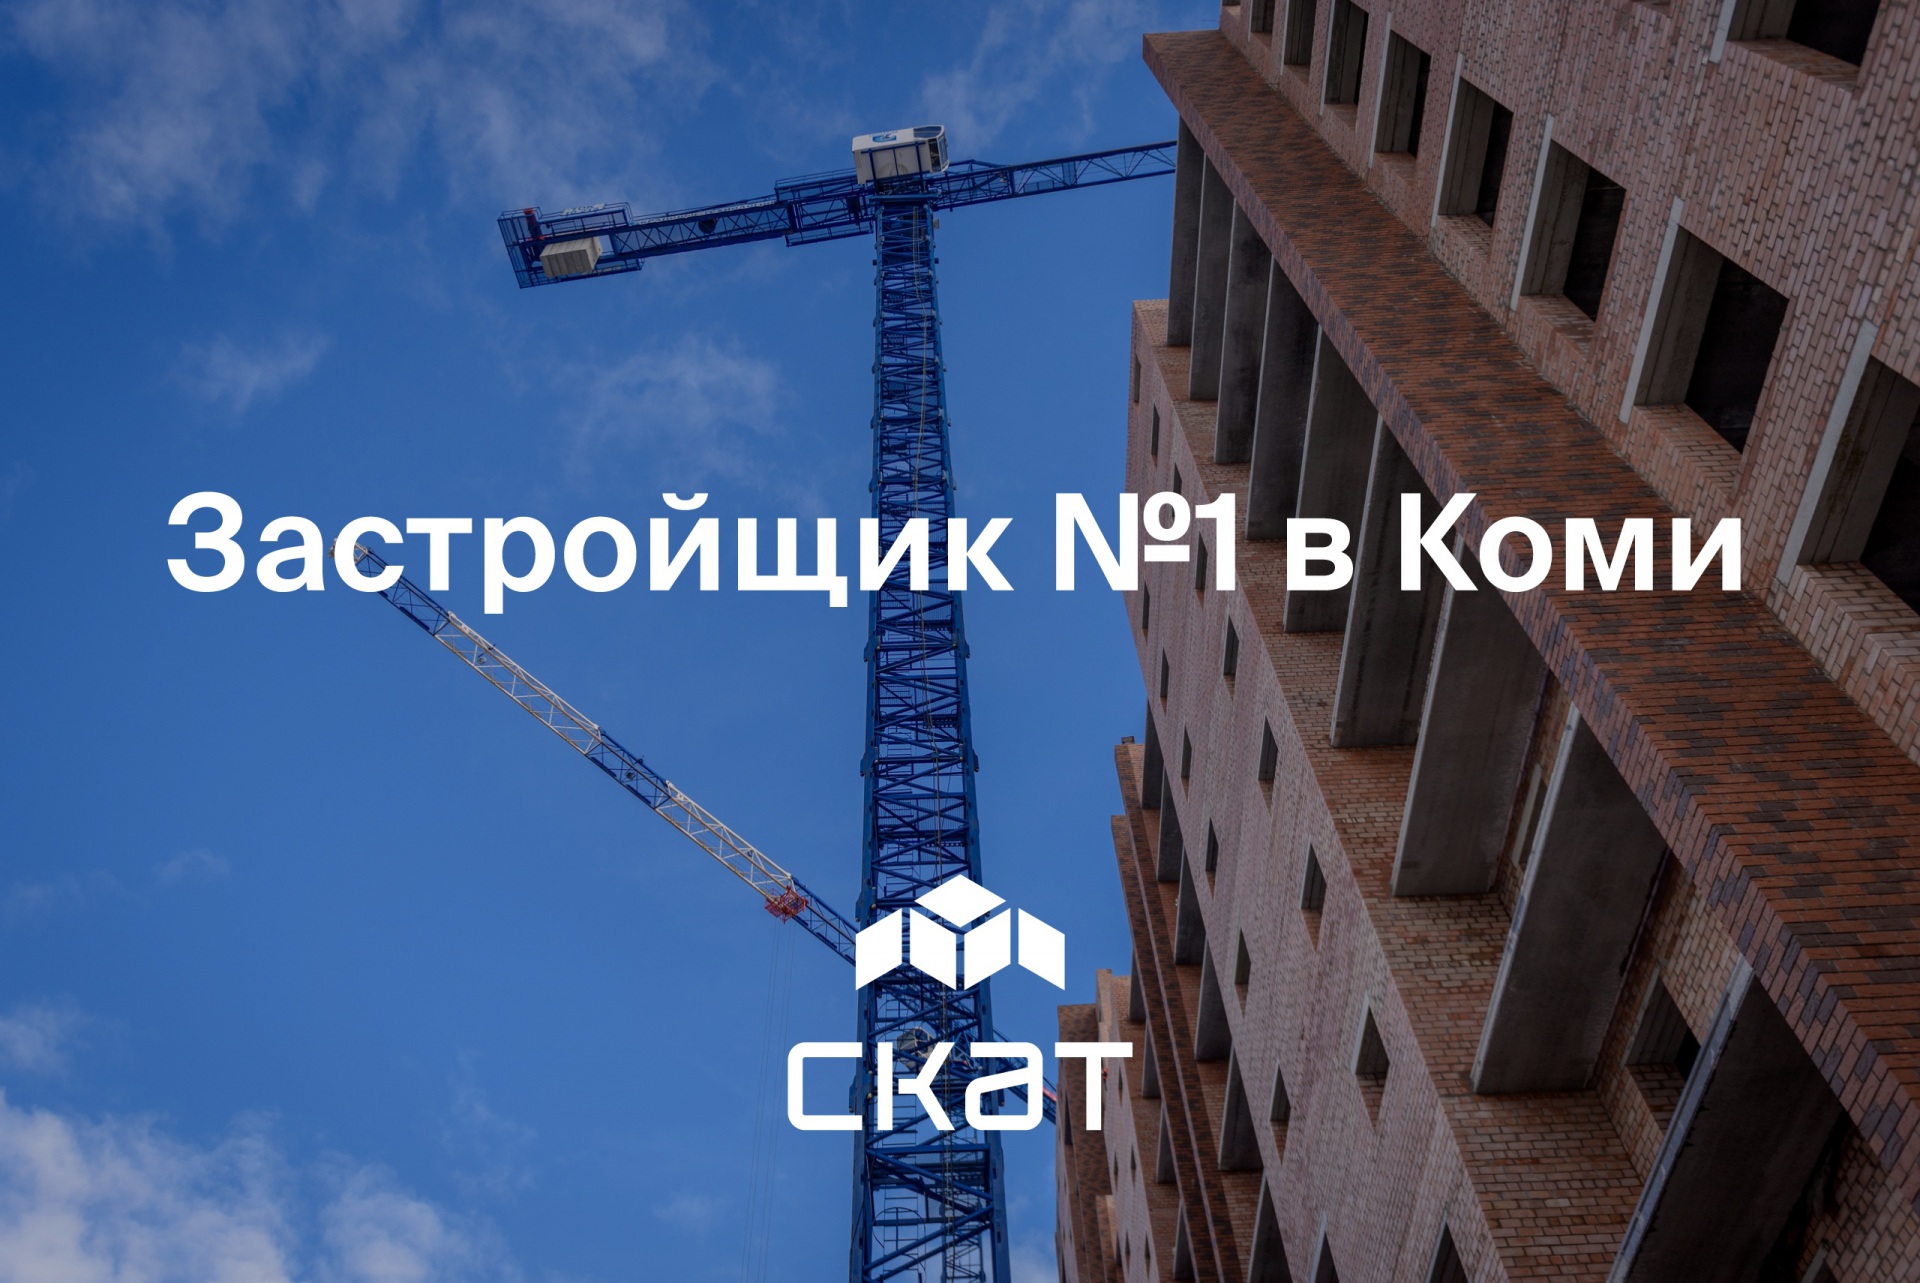 СКАТ — лидер строительной отрасли Коми по итогам 2019 года